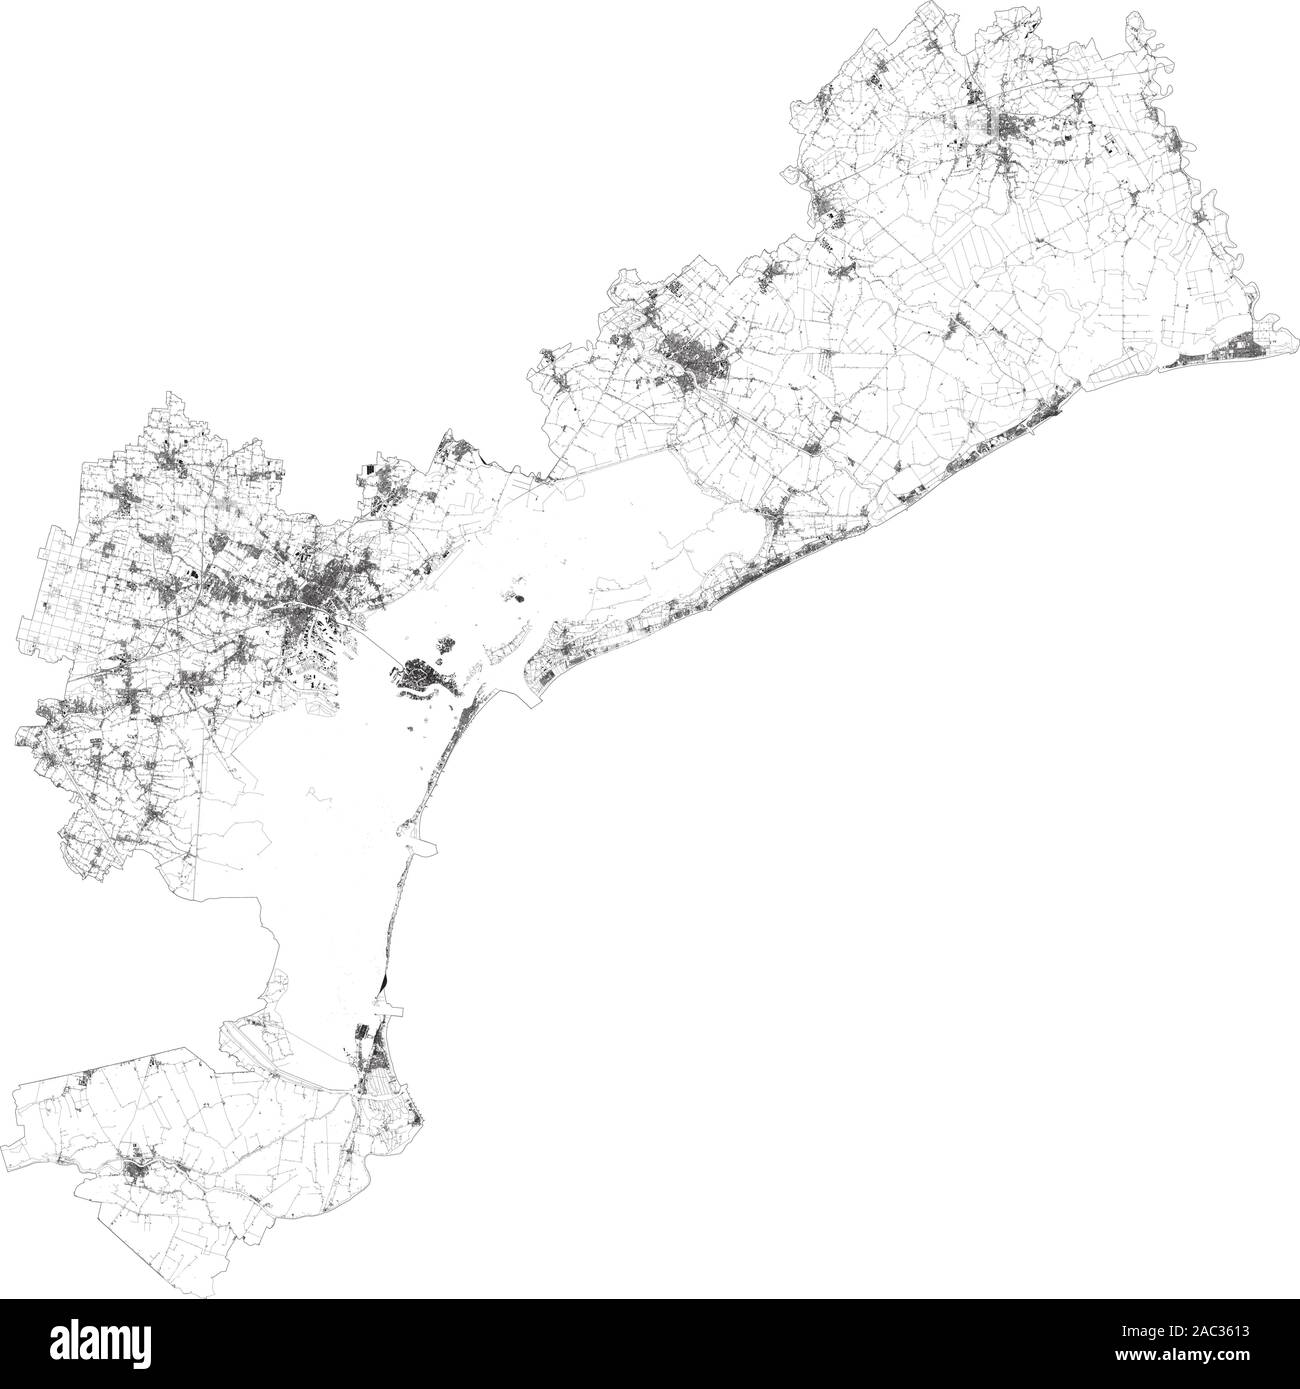 Mappa satellitare di Venezia e le aree circostanti. Veneto, Italia. Mappa di strade, tangenziali e autostrade, fiumi, linee ferroviarie Illustrazione Vettoriale